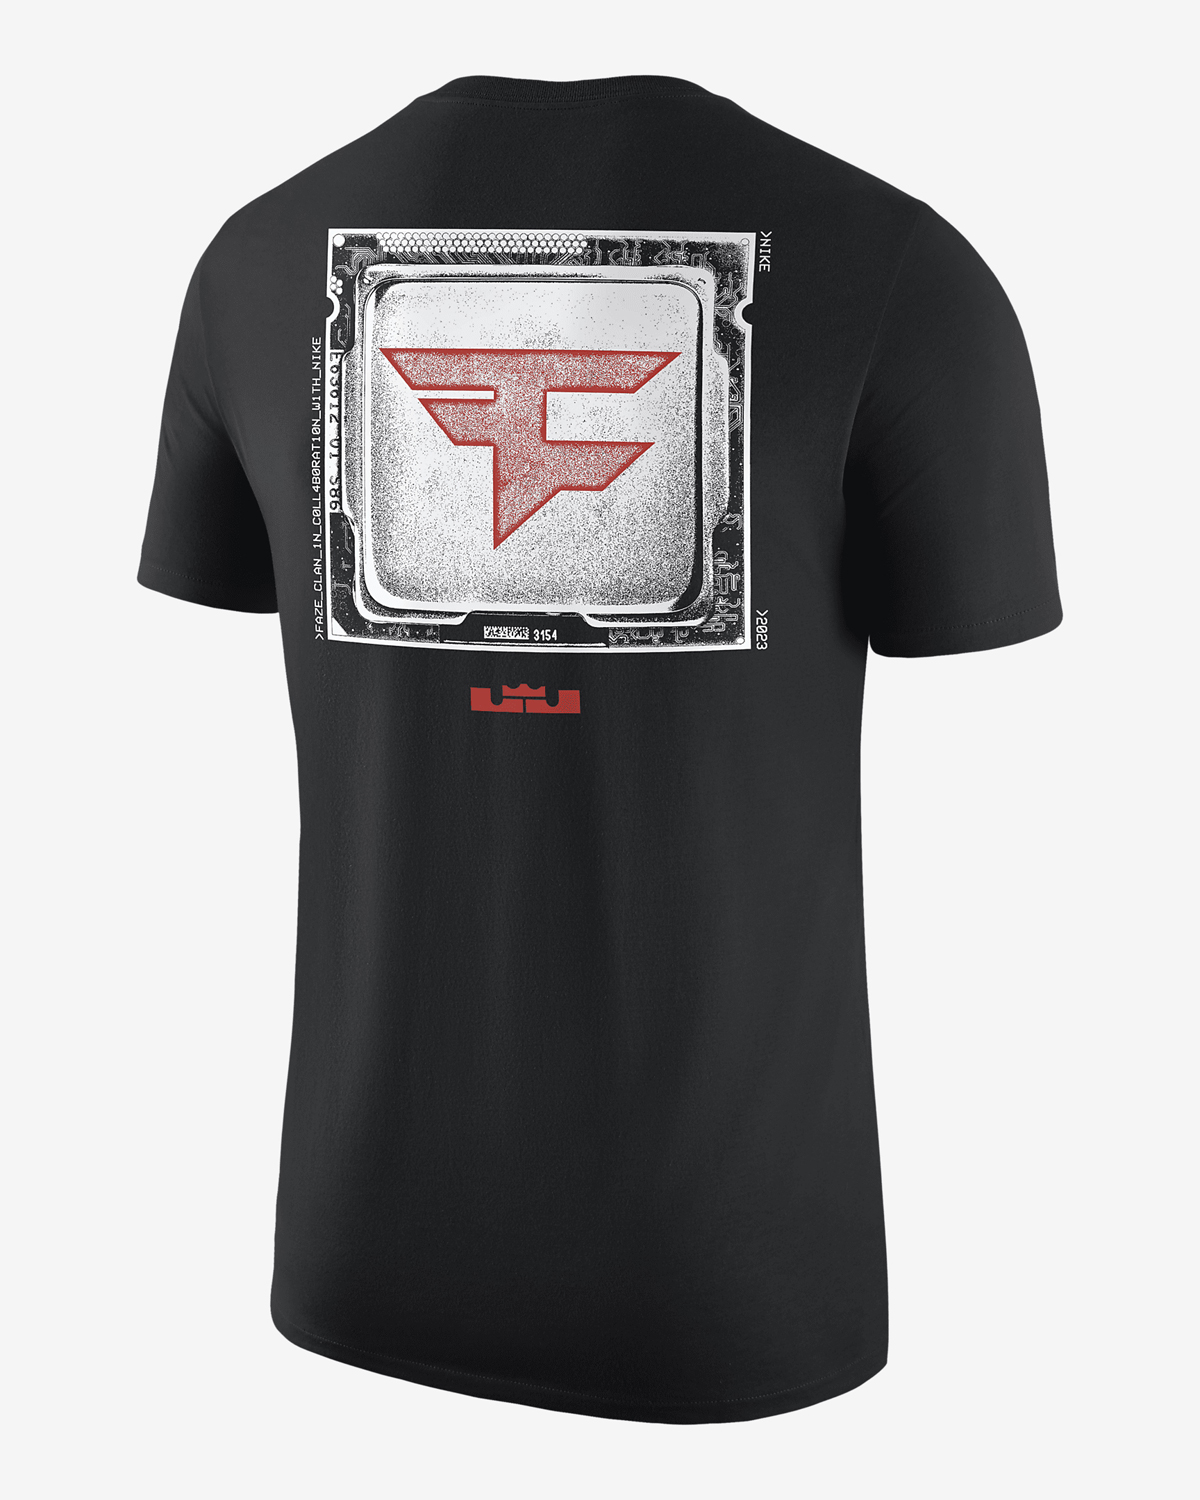 Nike-LeBron-FaZe-Clan-T-Shirt-2